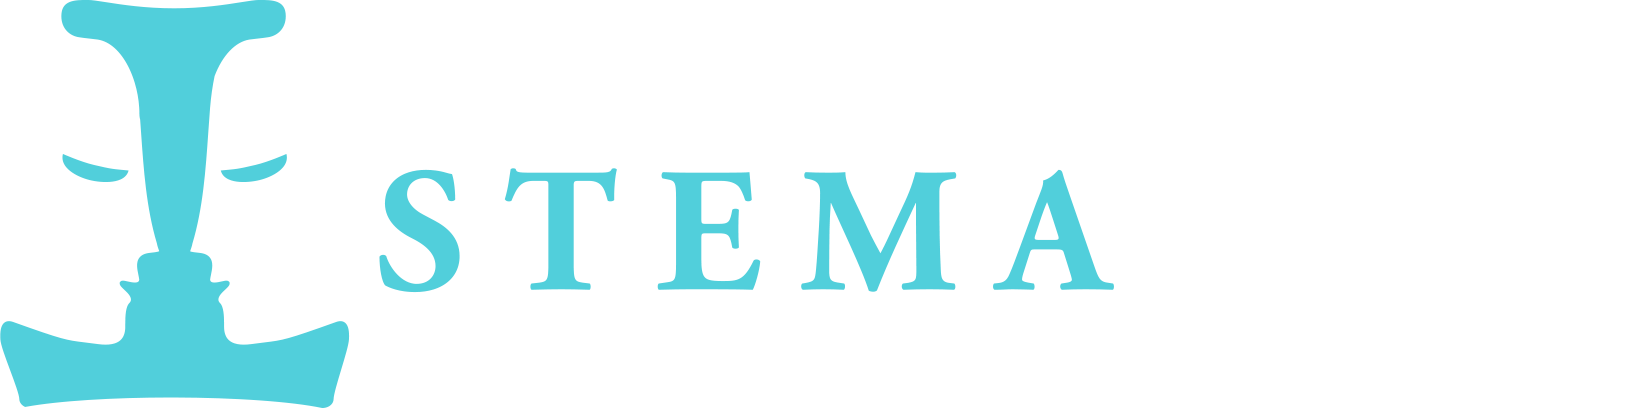 Stemafisk logo